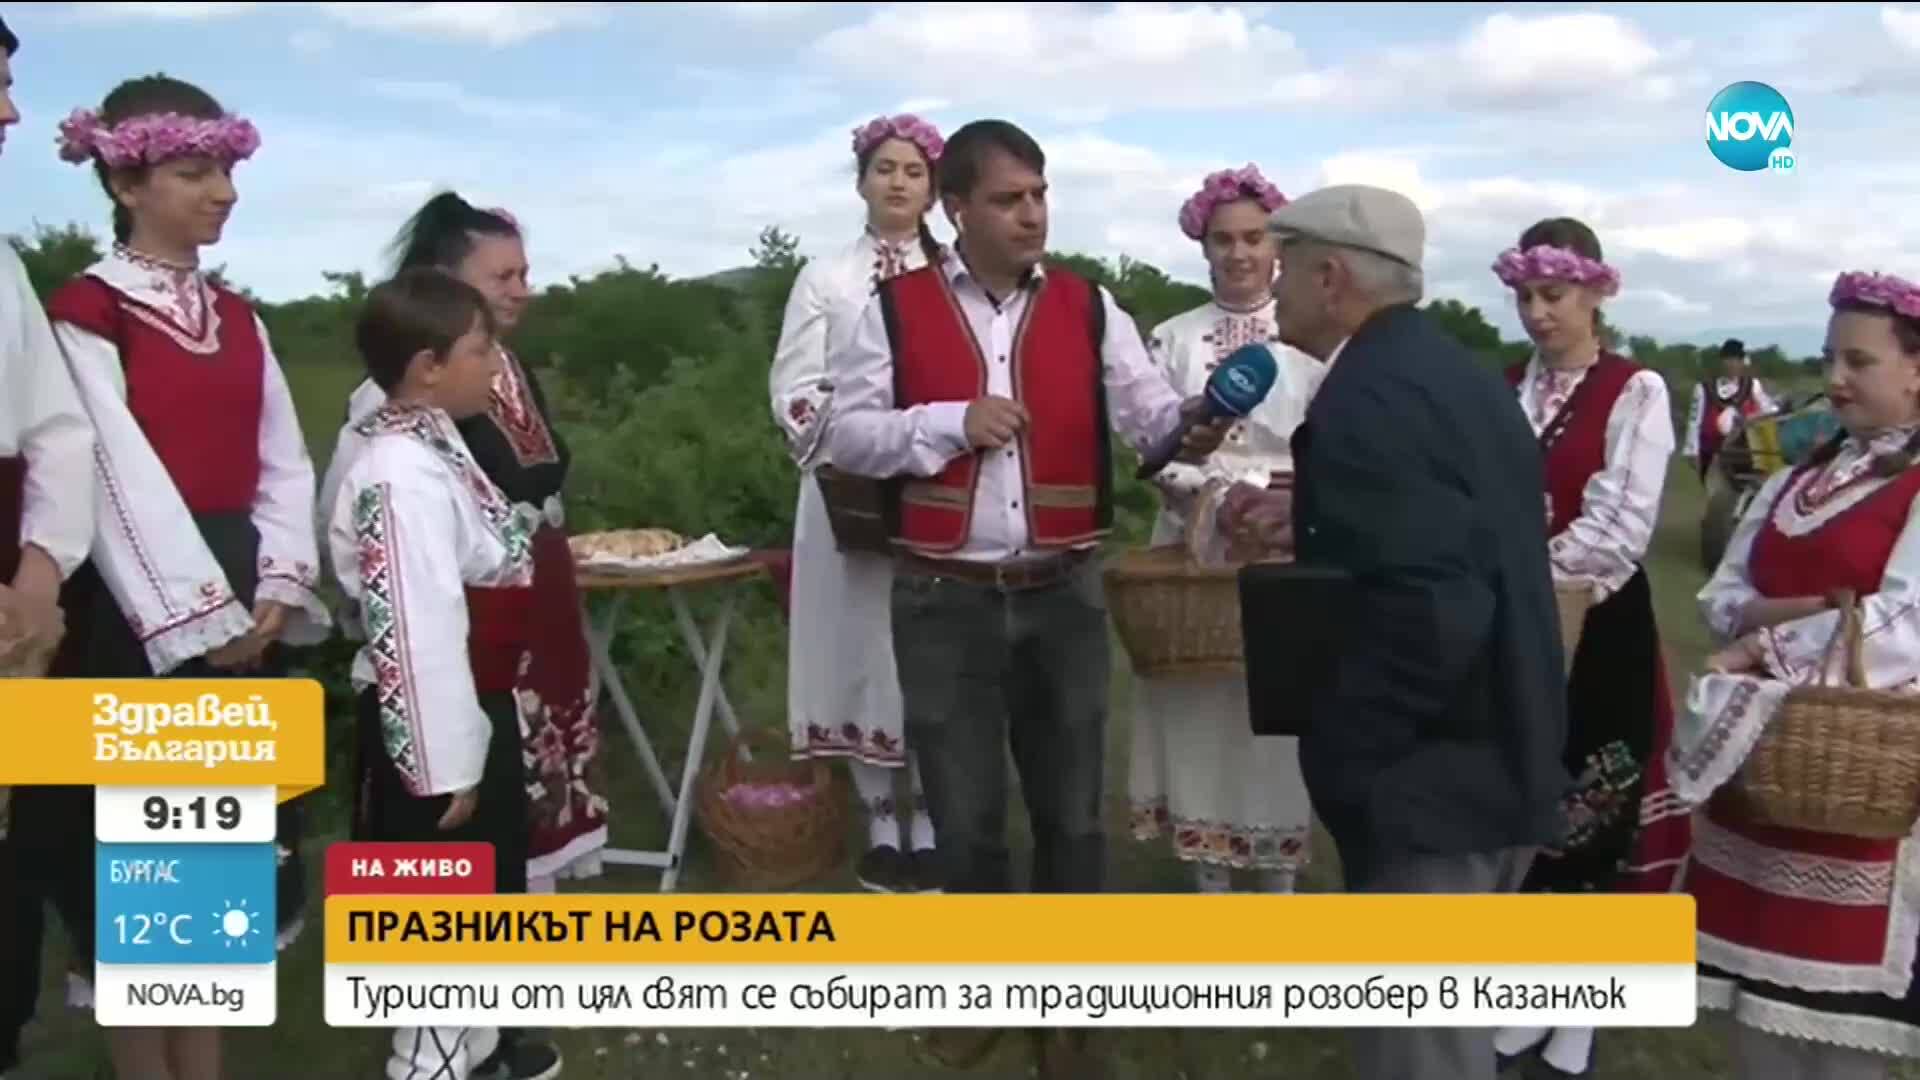 Туристи от цял свят се събират за традиционния розобер в Казанлък